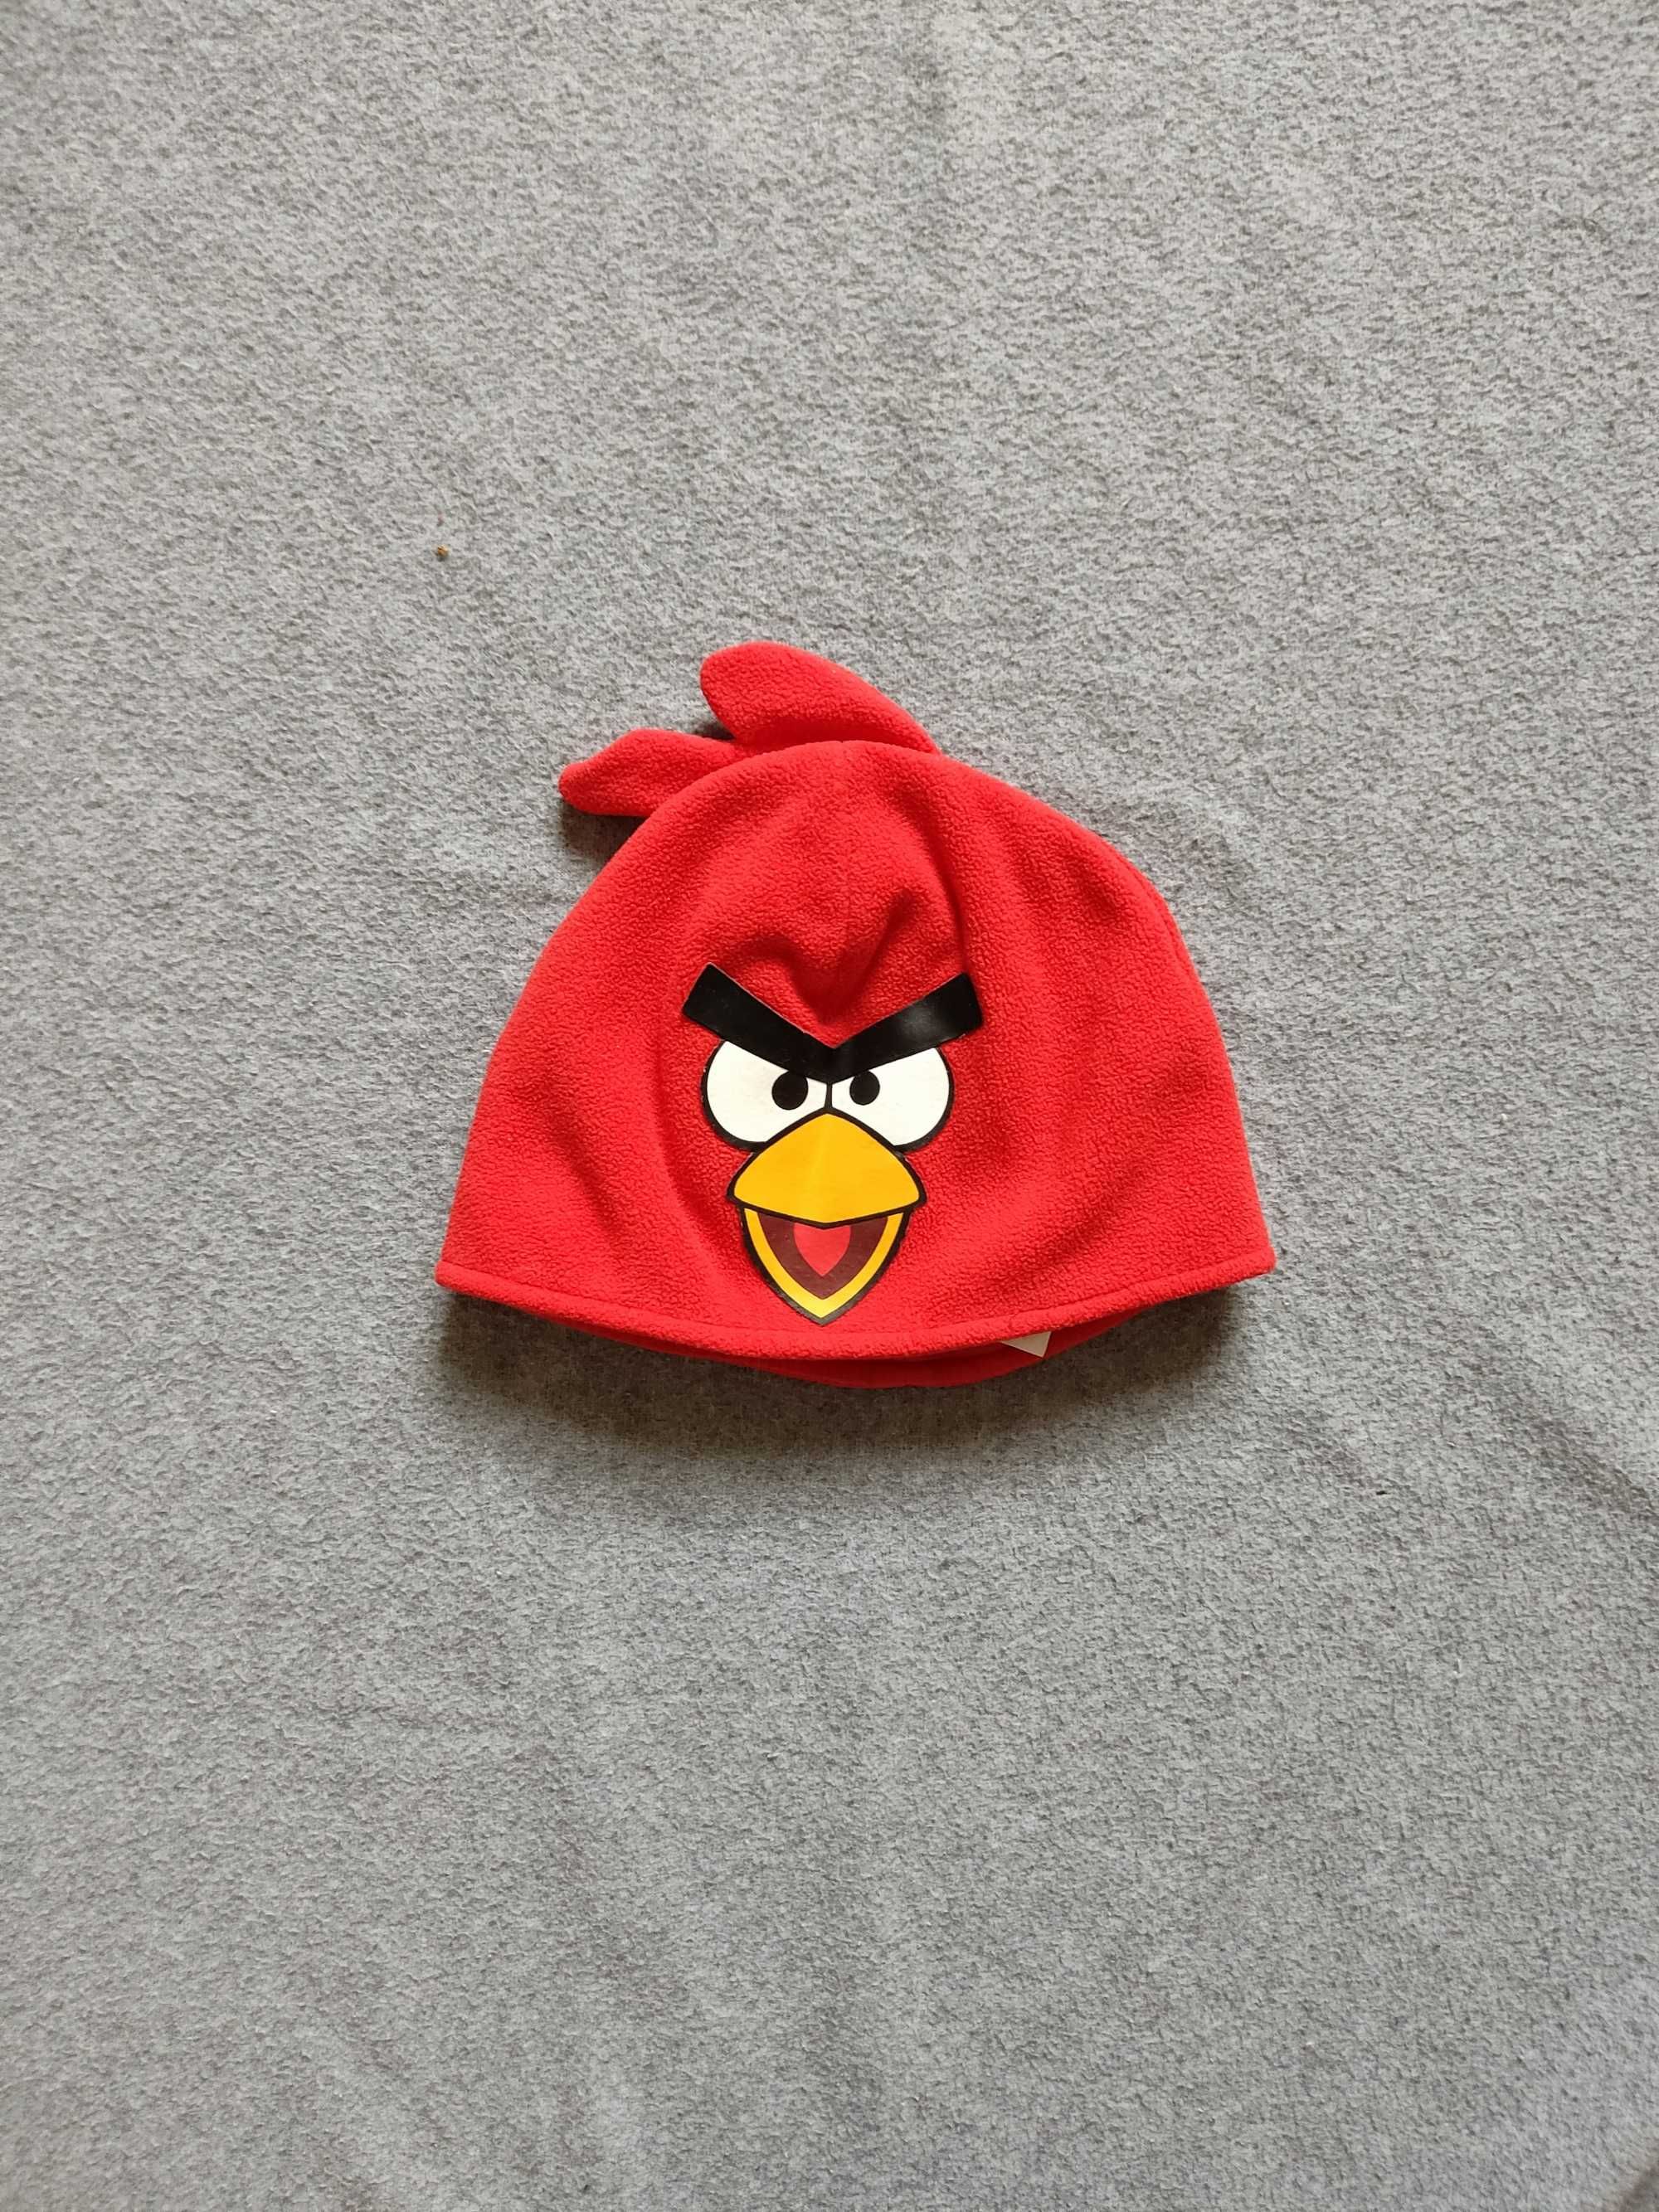 Polarowa czapka czerwona Angry Birds H&M 92/104